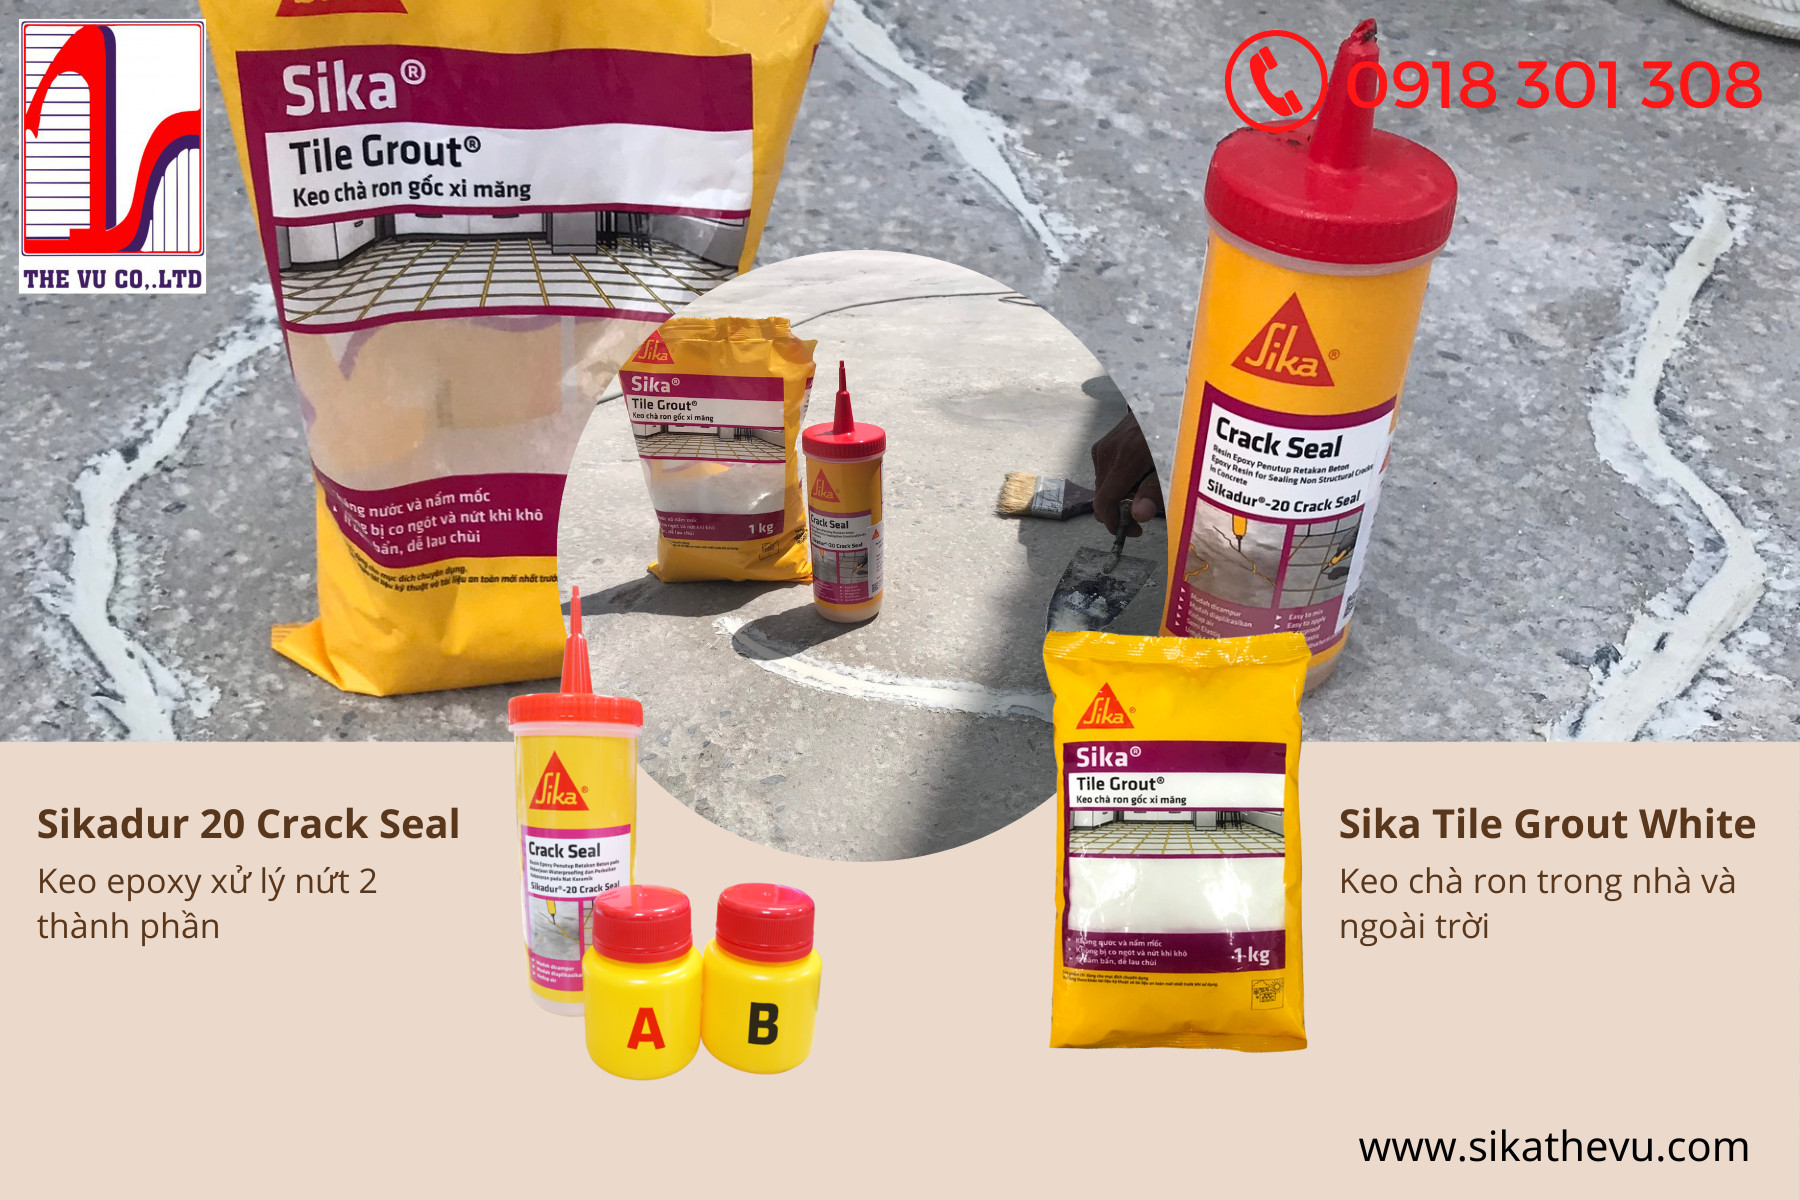 Liệu bạn đã biết công dụng Sika Tile Grout kết hợp với Sikadur 20 Crack Seal chưa? 